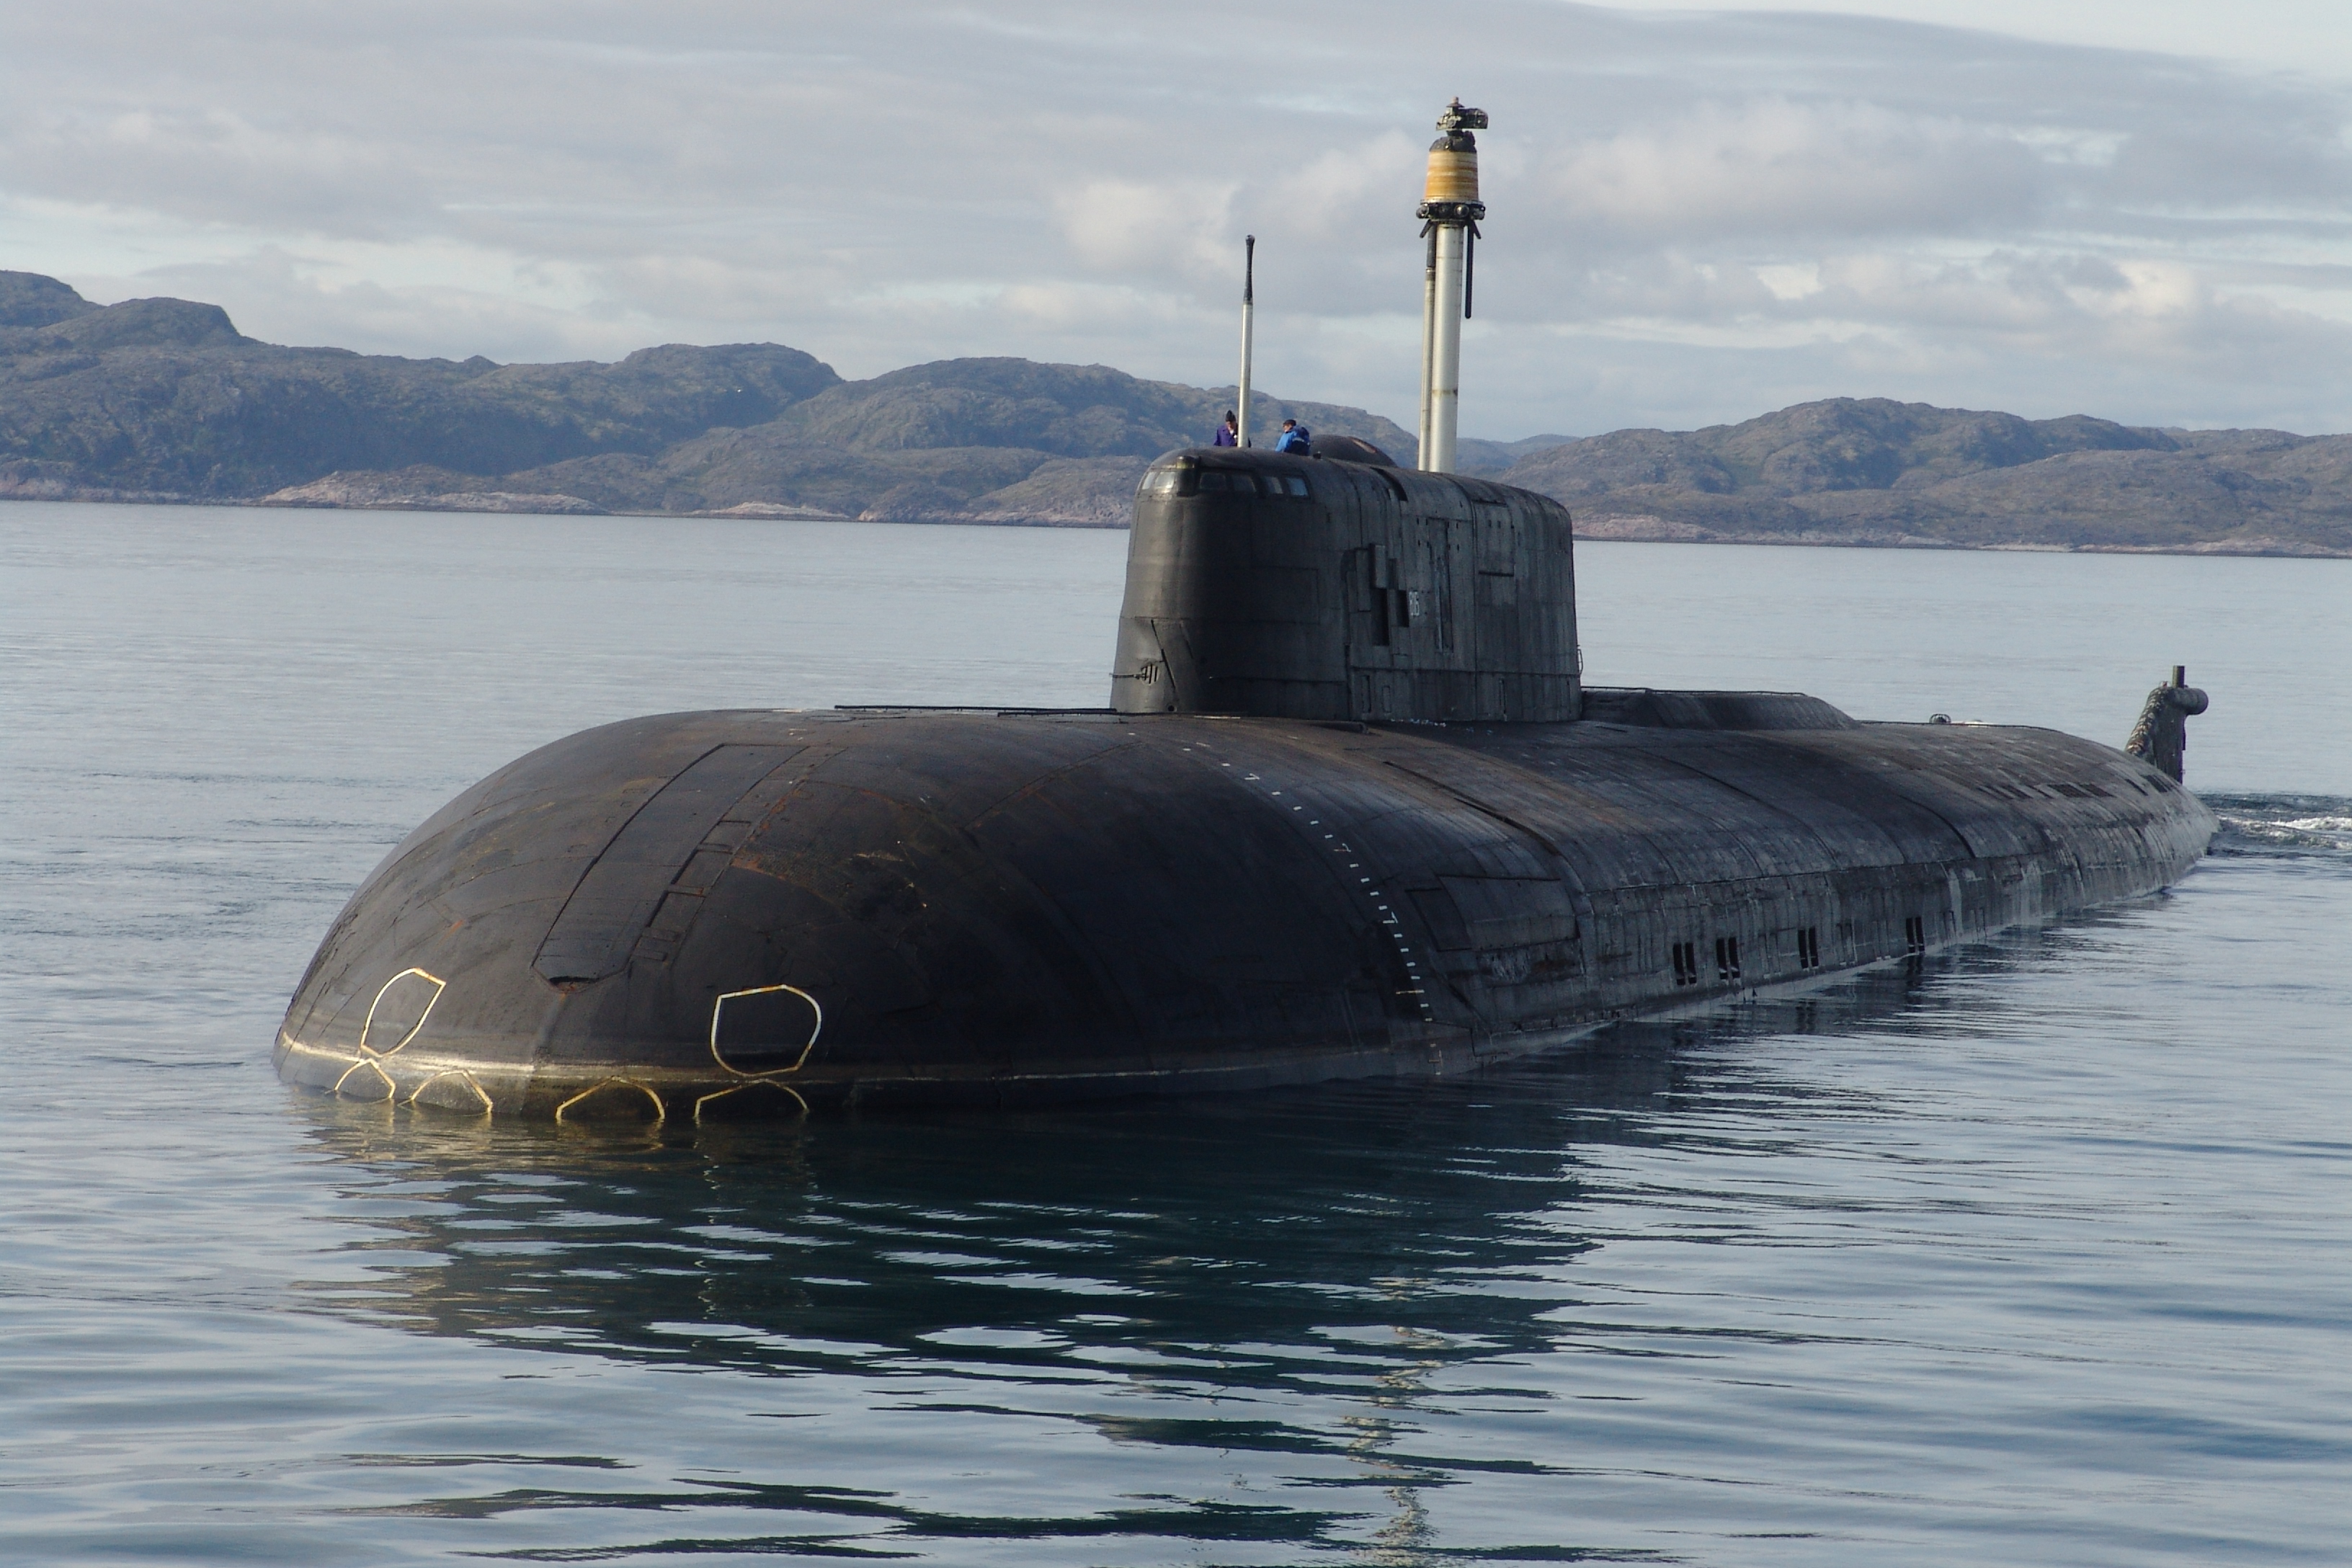 Пл тка. Лодки 949а Антей. Подводные лодки проекта 949а «Антей». Атомный подводный крейсер к-186 "Омск". Проект 949а подводная лодка.